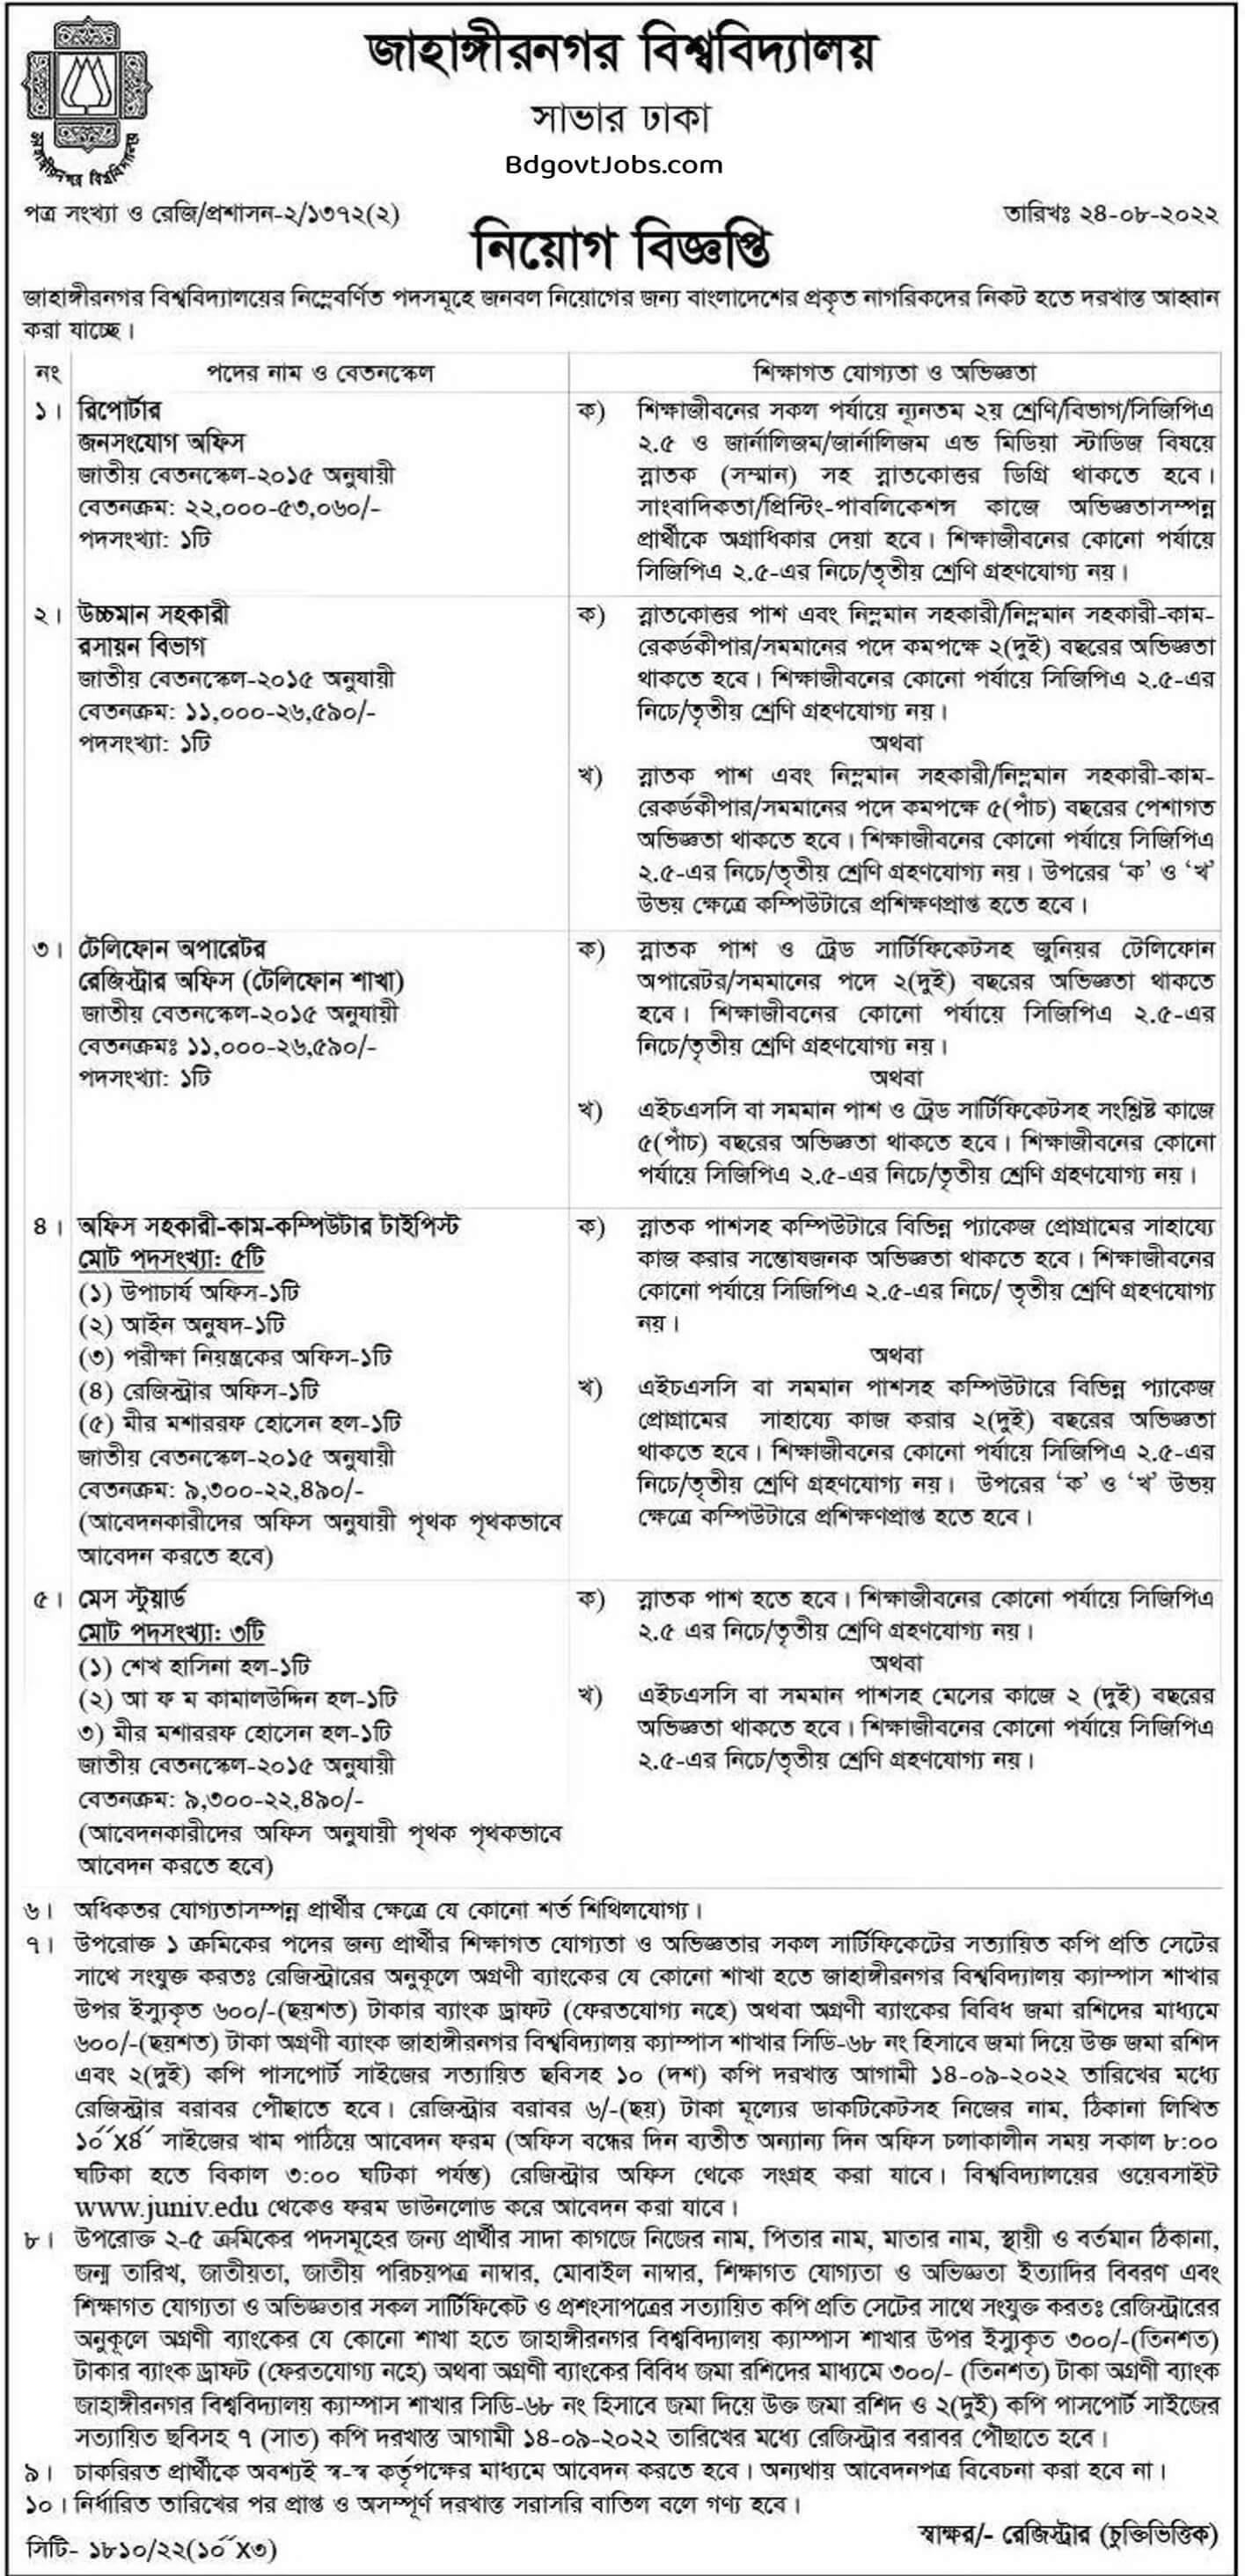 Jahangirnagar University Job Circular Image 2022